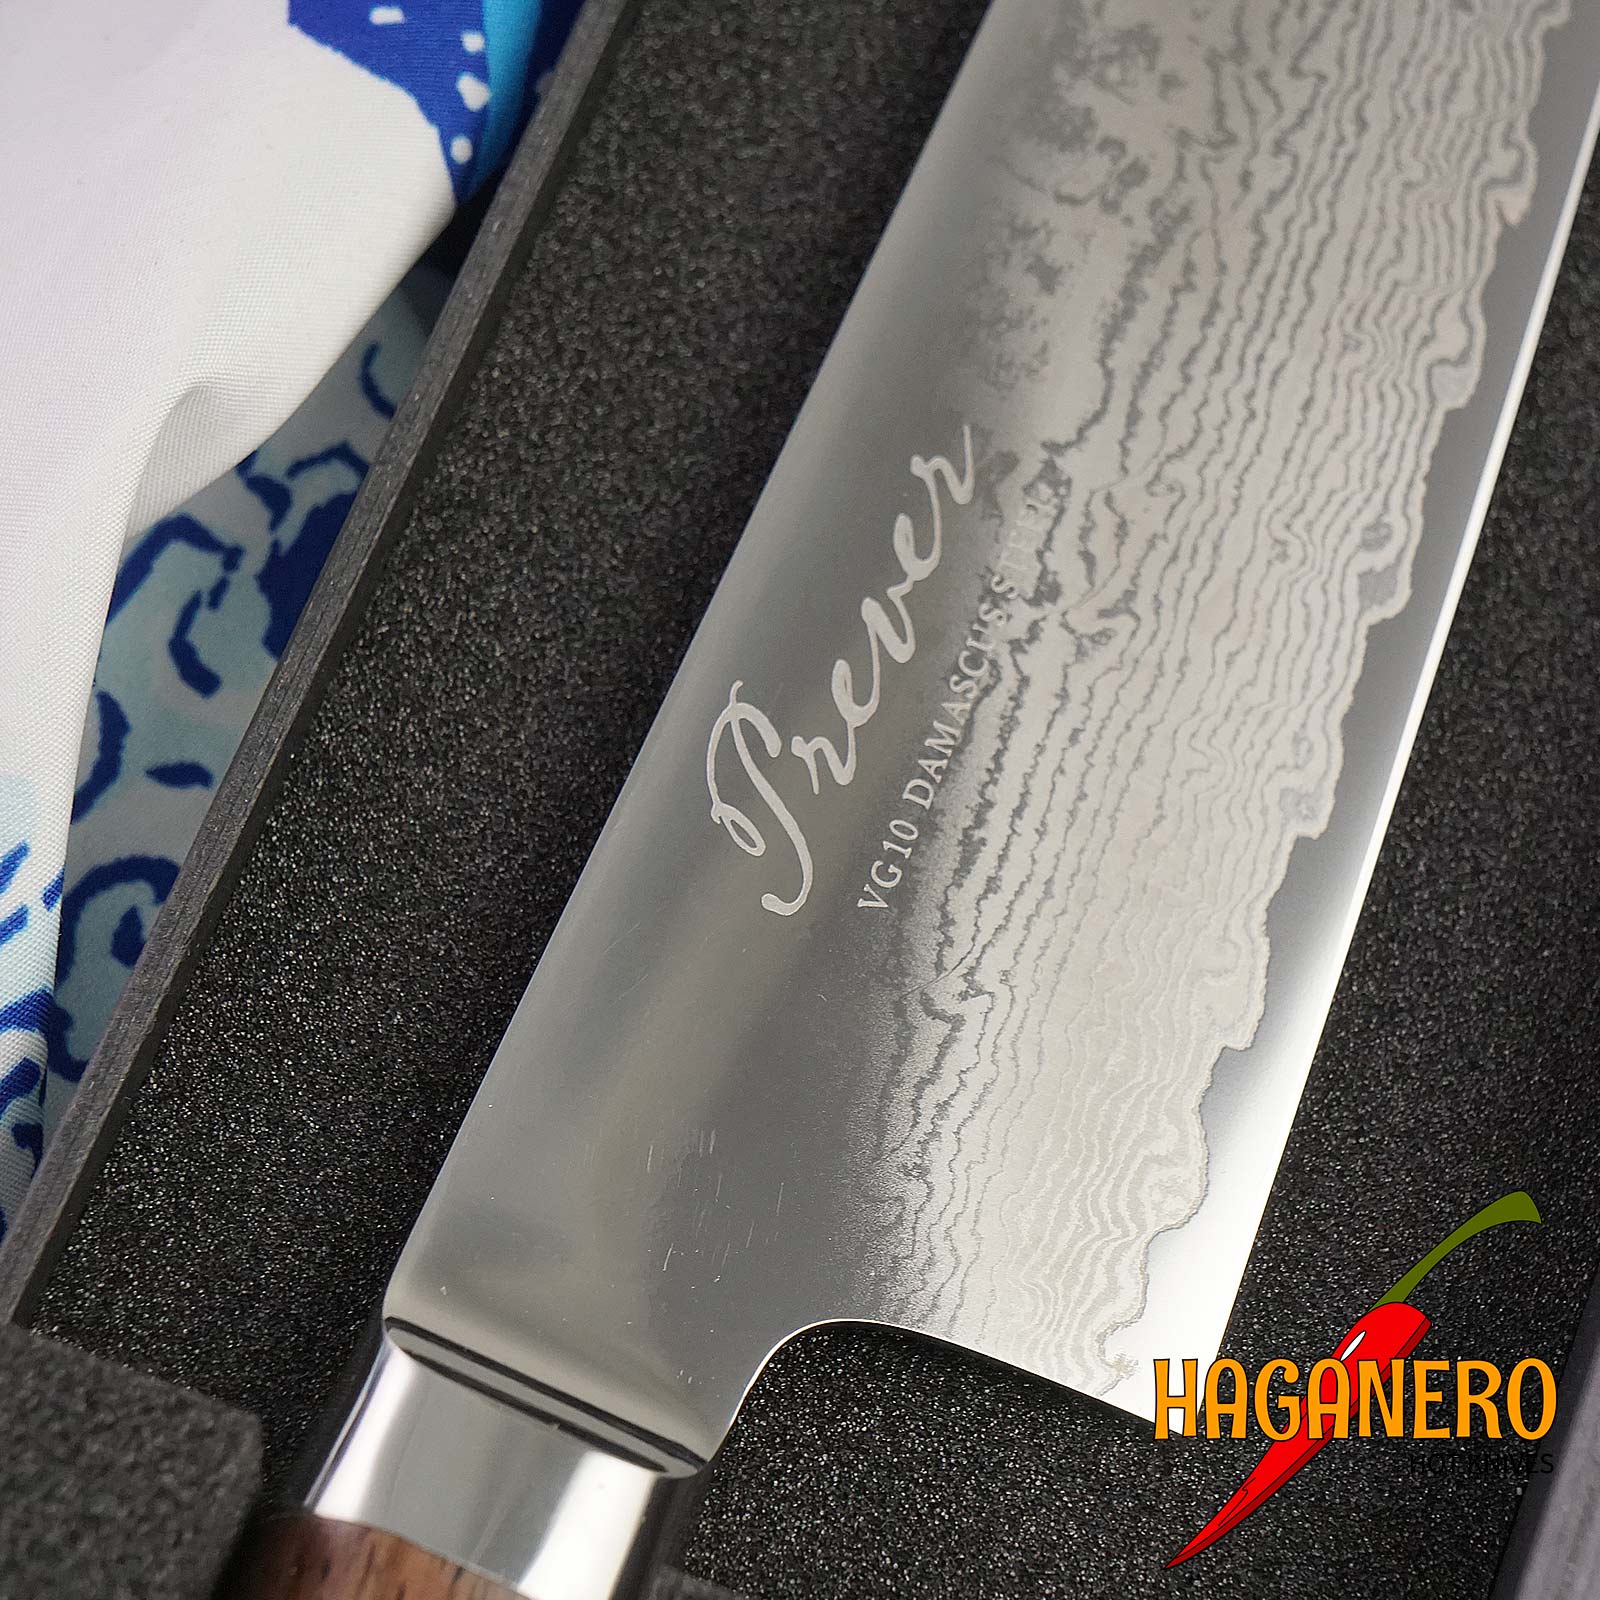 Gyuto Japanese kitchen knife Ryusen Hamono Prever PV101 24cm